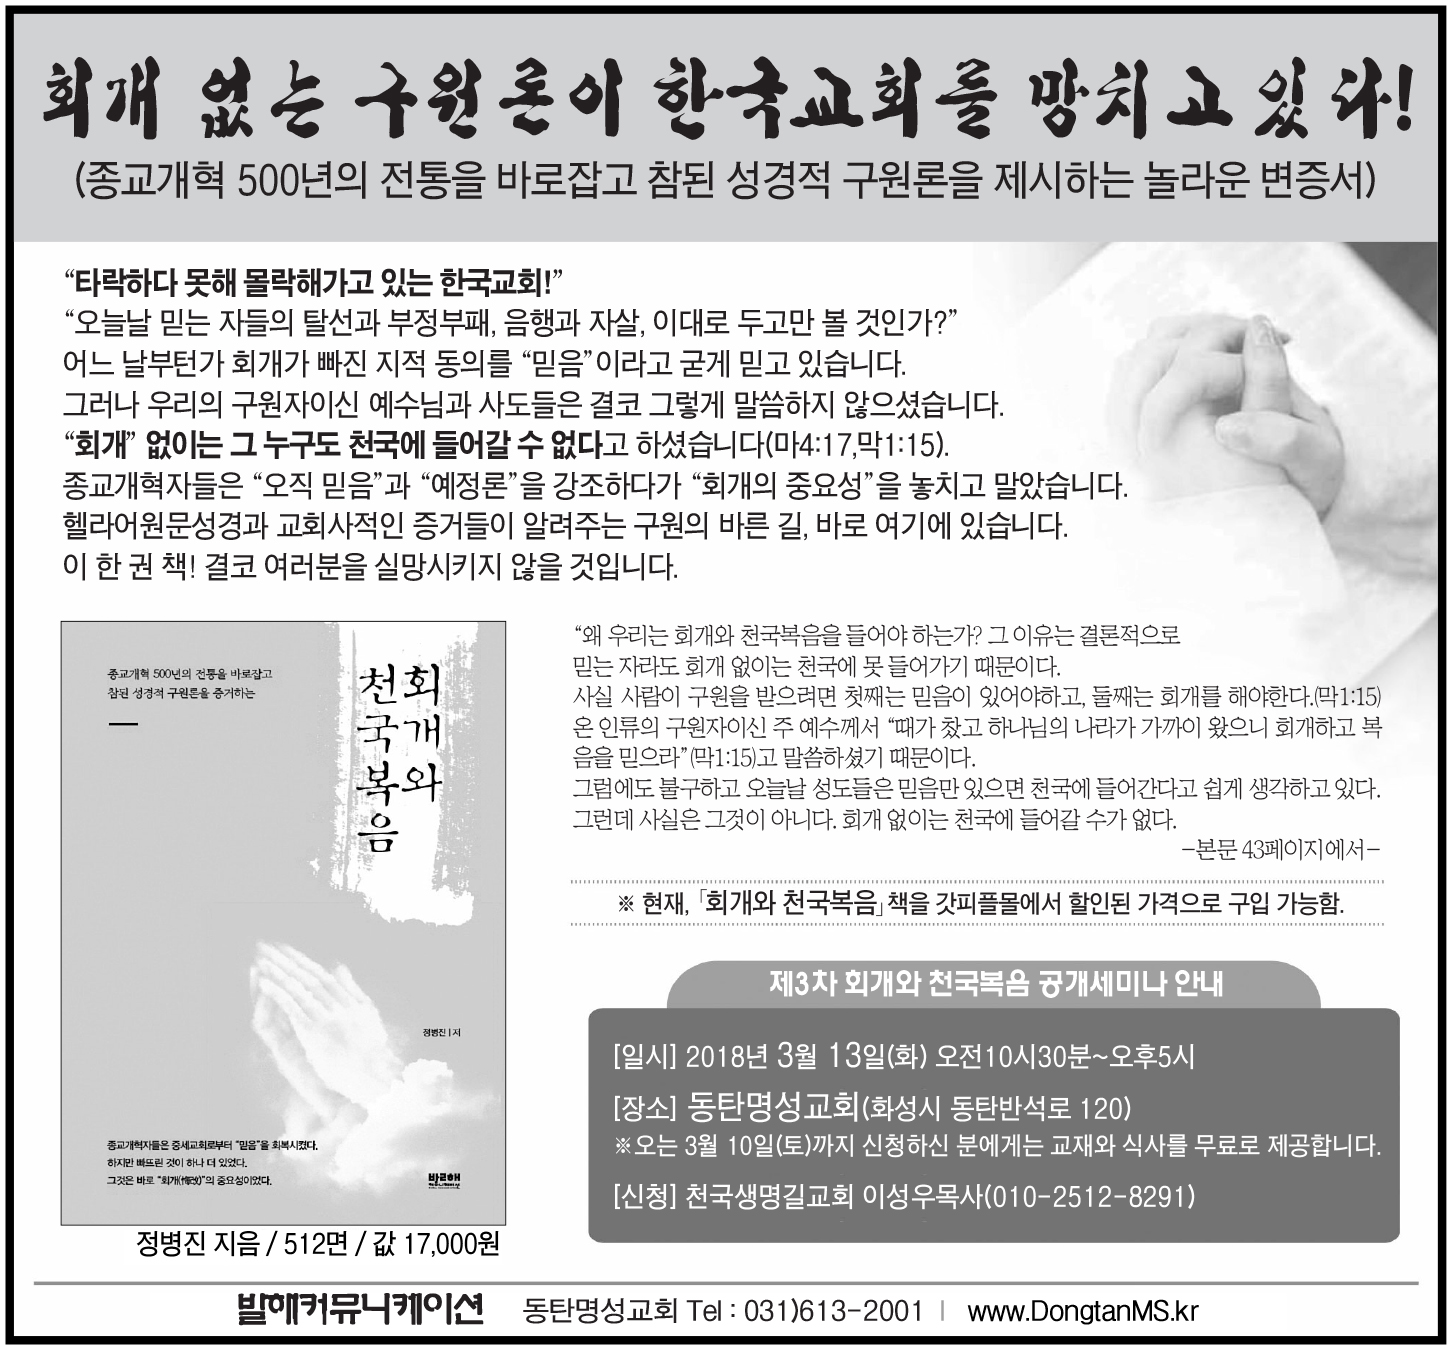 2018-03-04(일) 기독교신문사_1.jpg